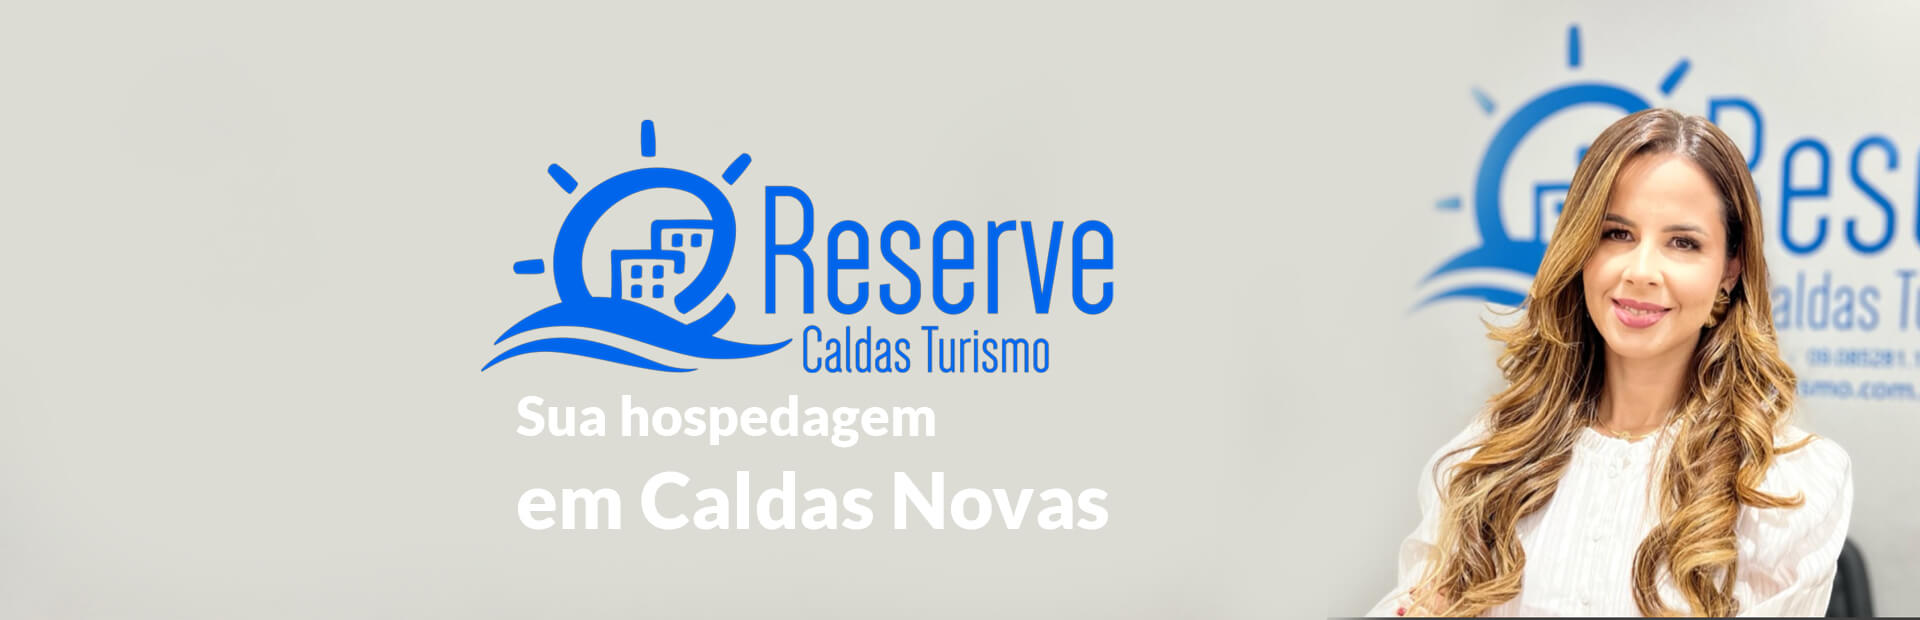 Equipe Reserve Caldas Turismo